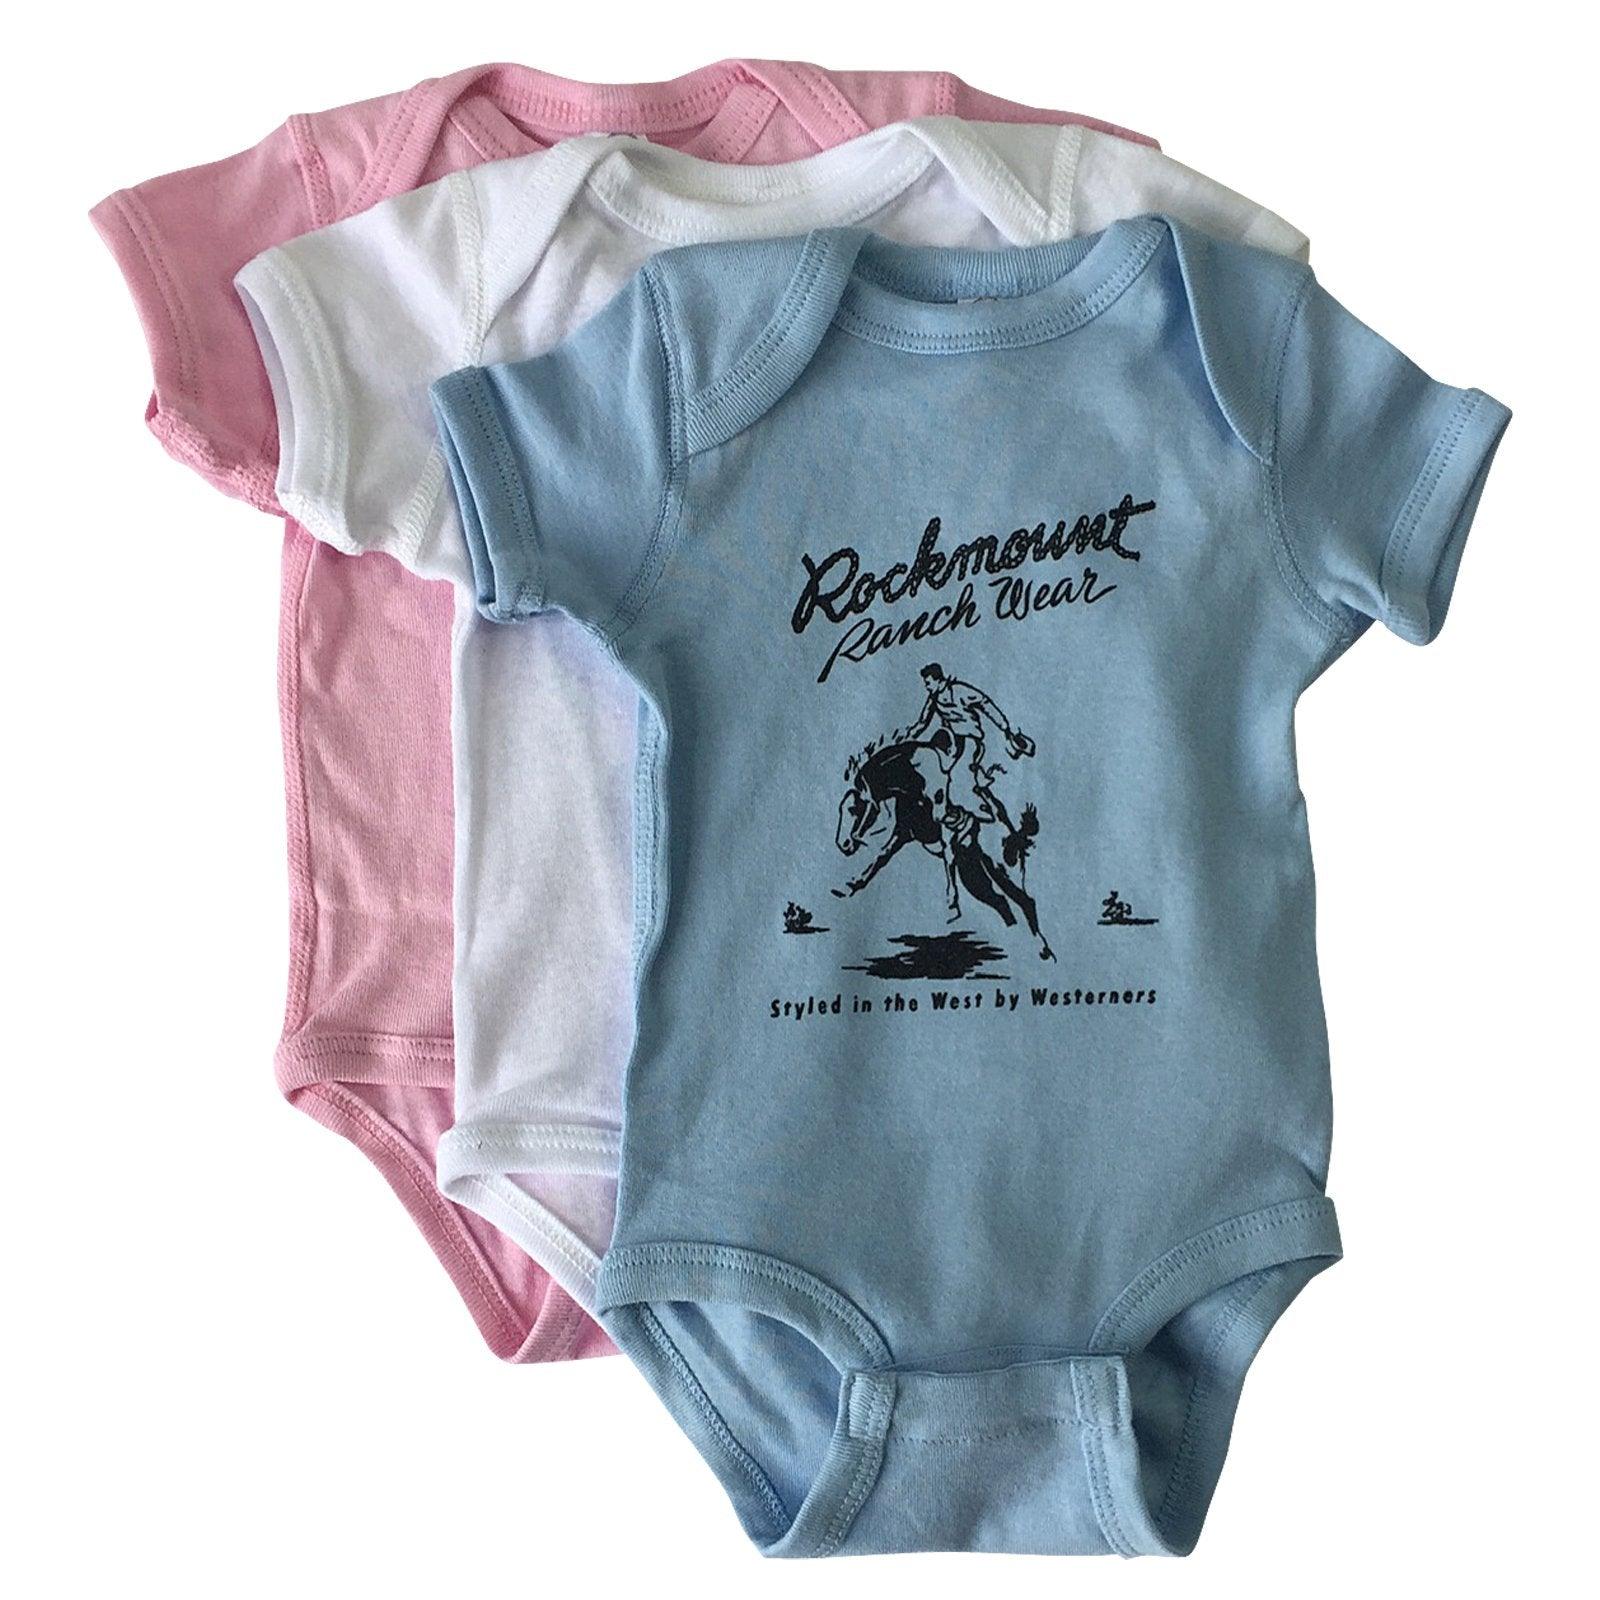 Rockmount Ranch Wear Baby Rockmount Bronc Onesie - Flyclothing LLC